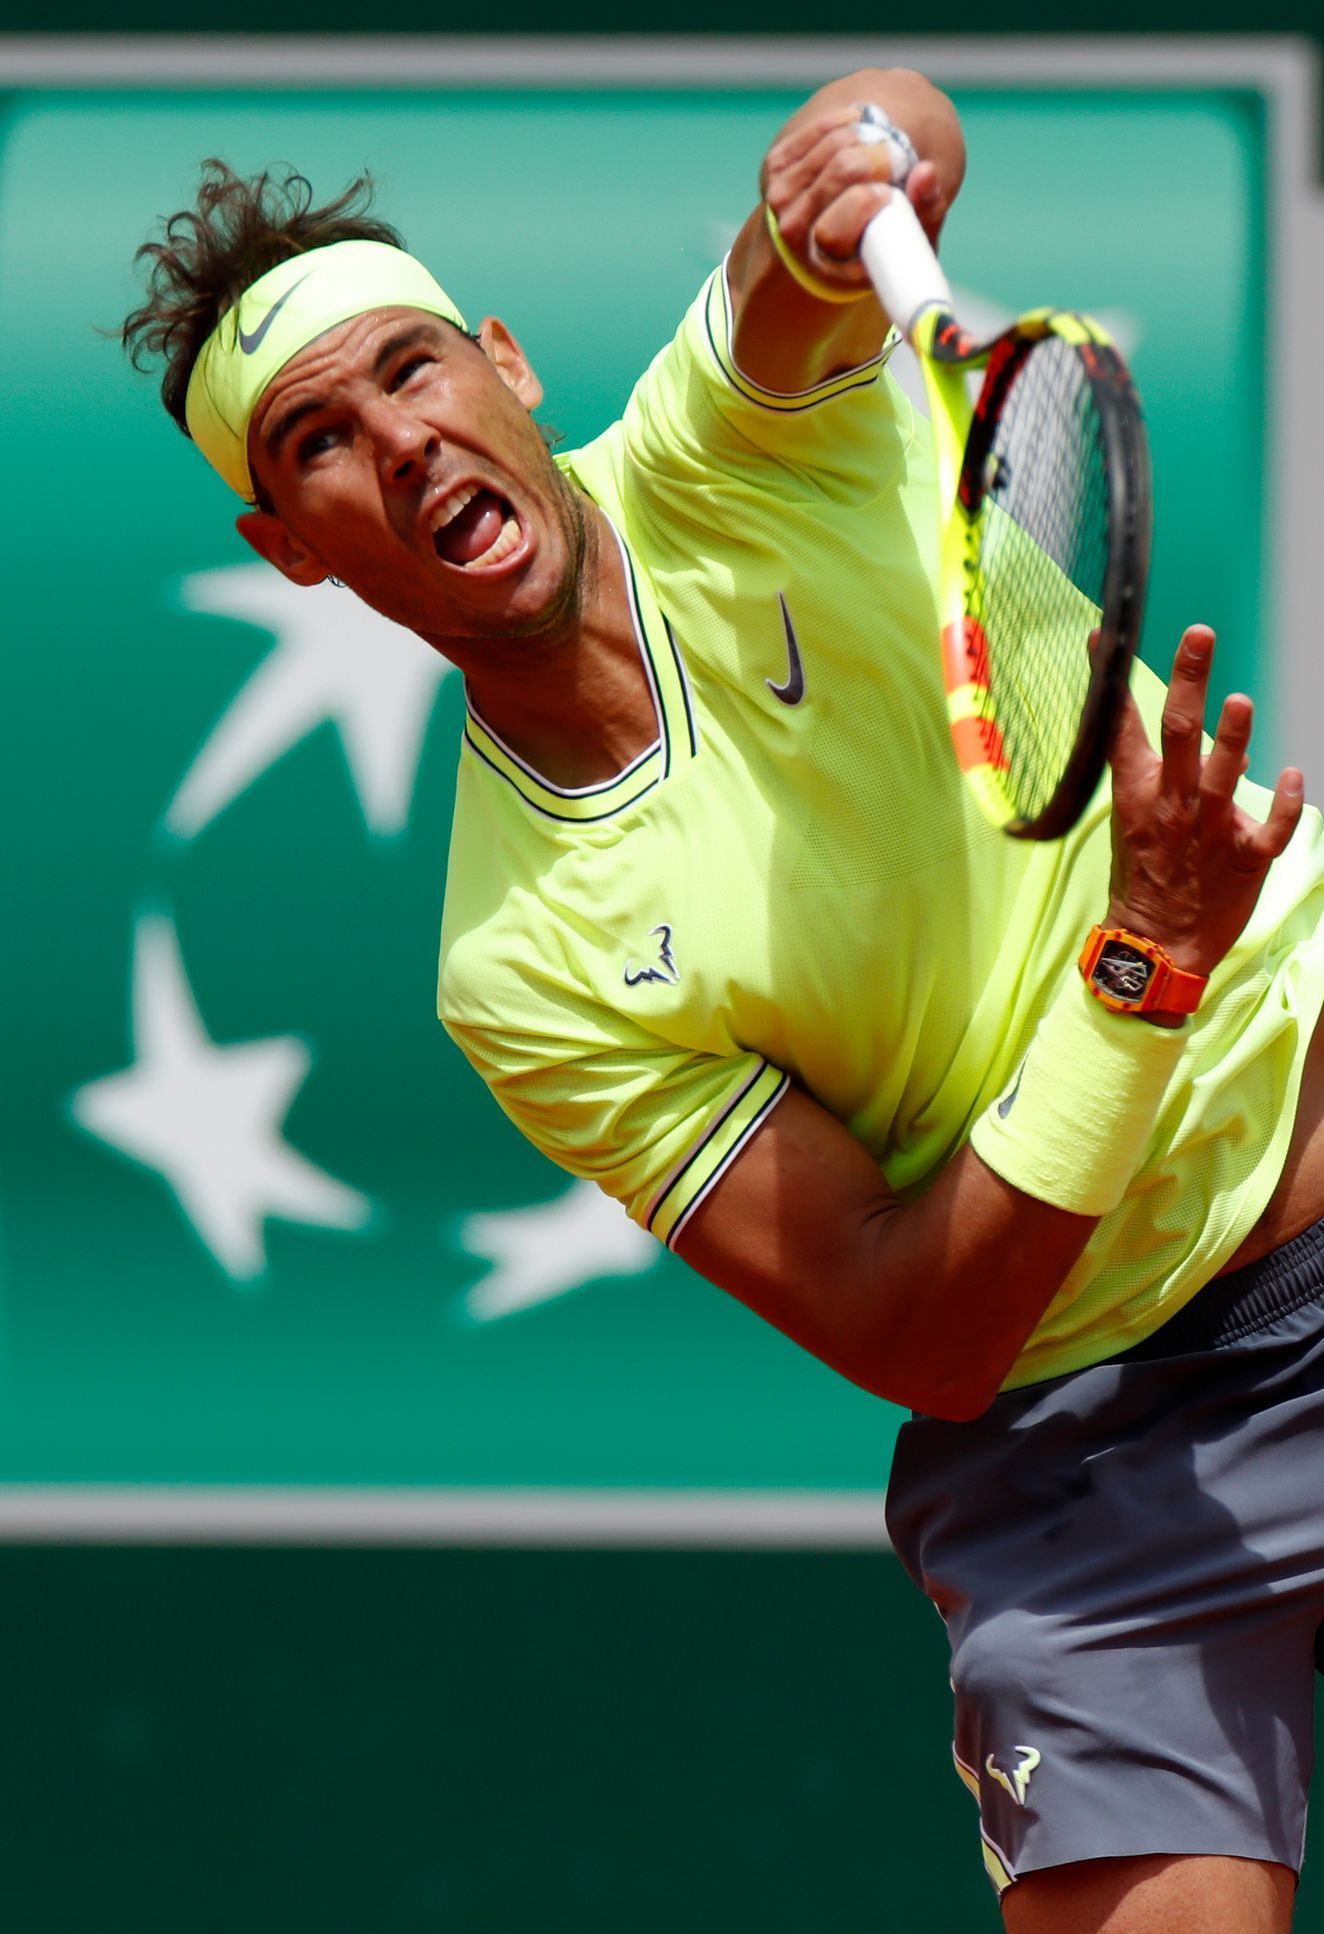 Móda na French Open 2019 (Rafael Nadal)